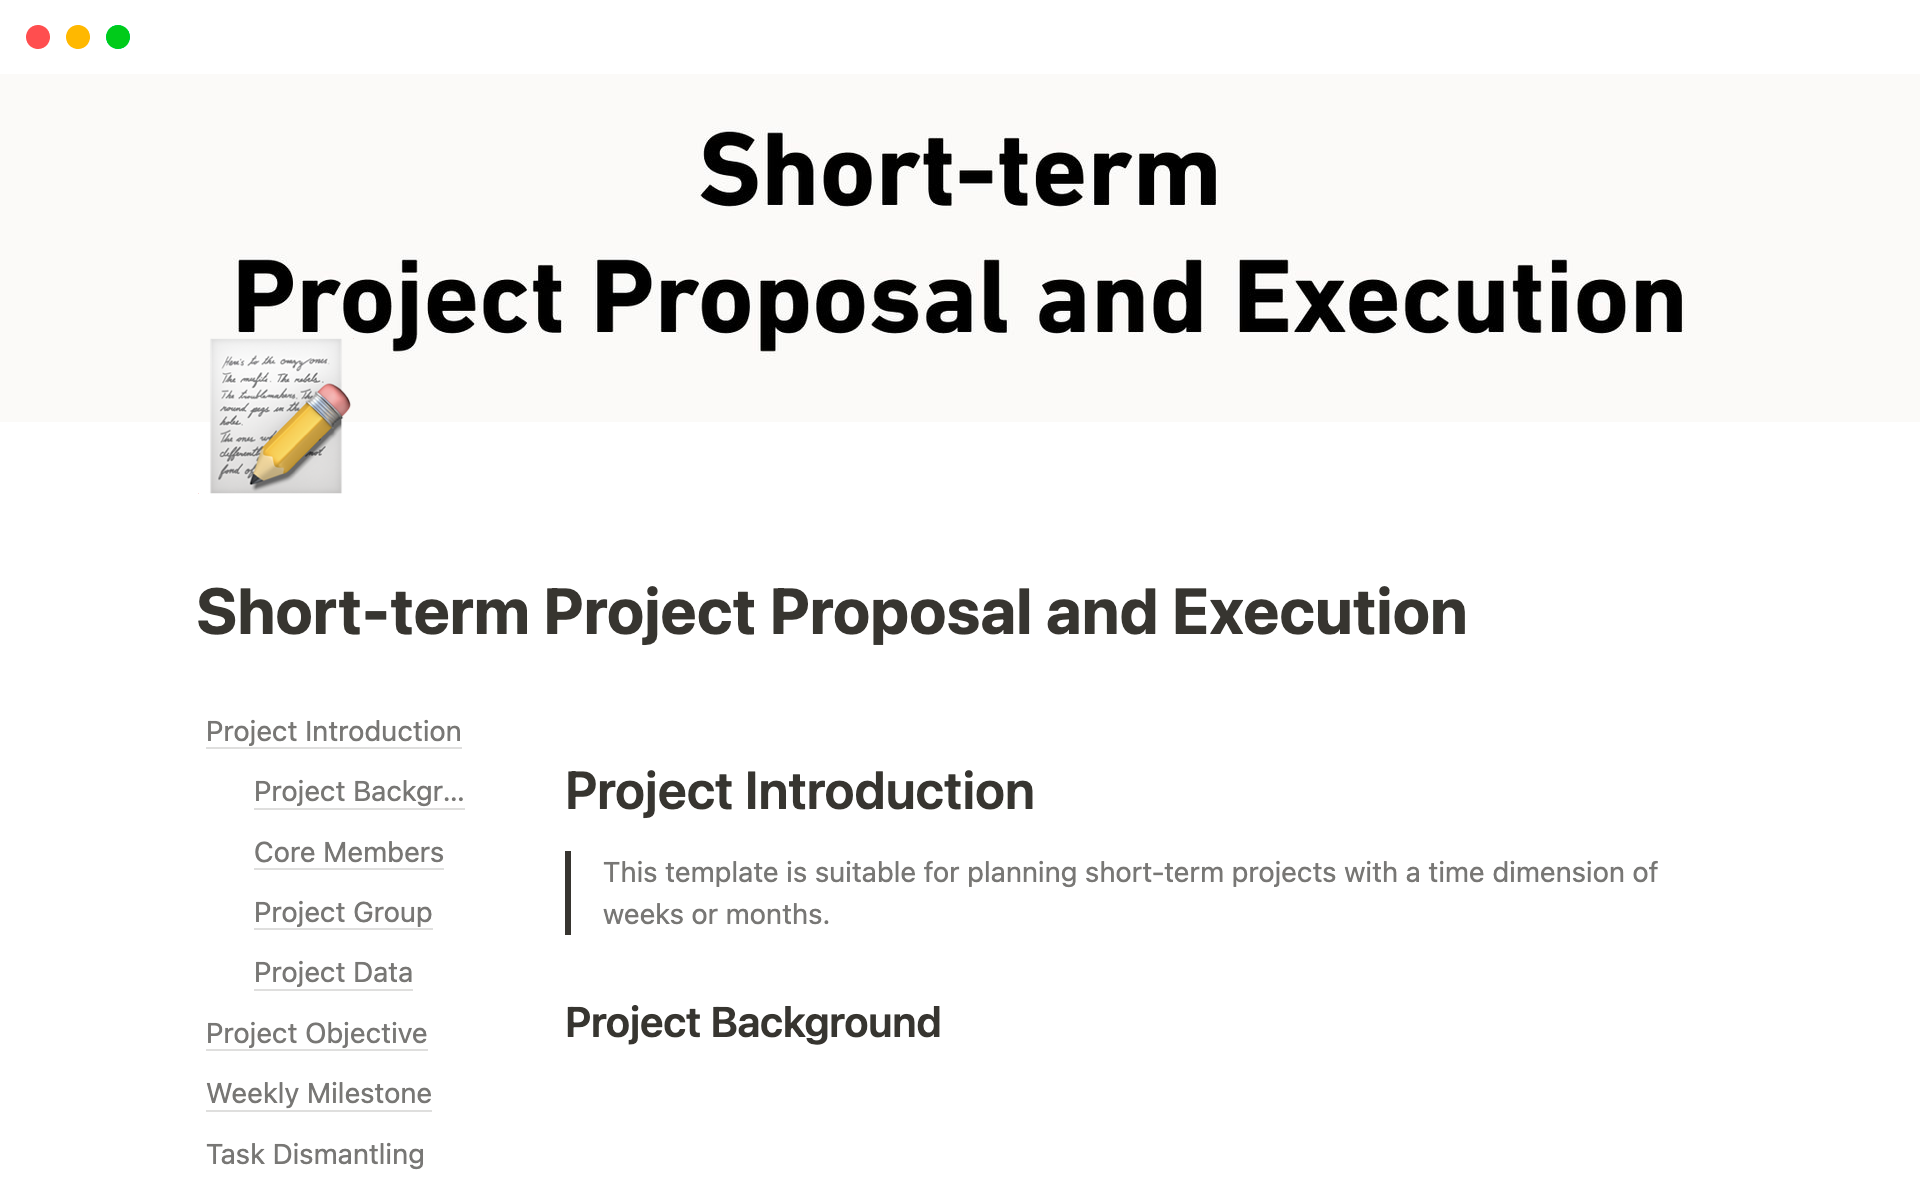 Uma prévia do modelo para Short-term Project Proposal and Execution